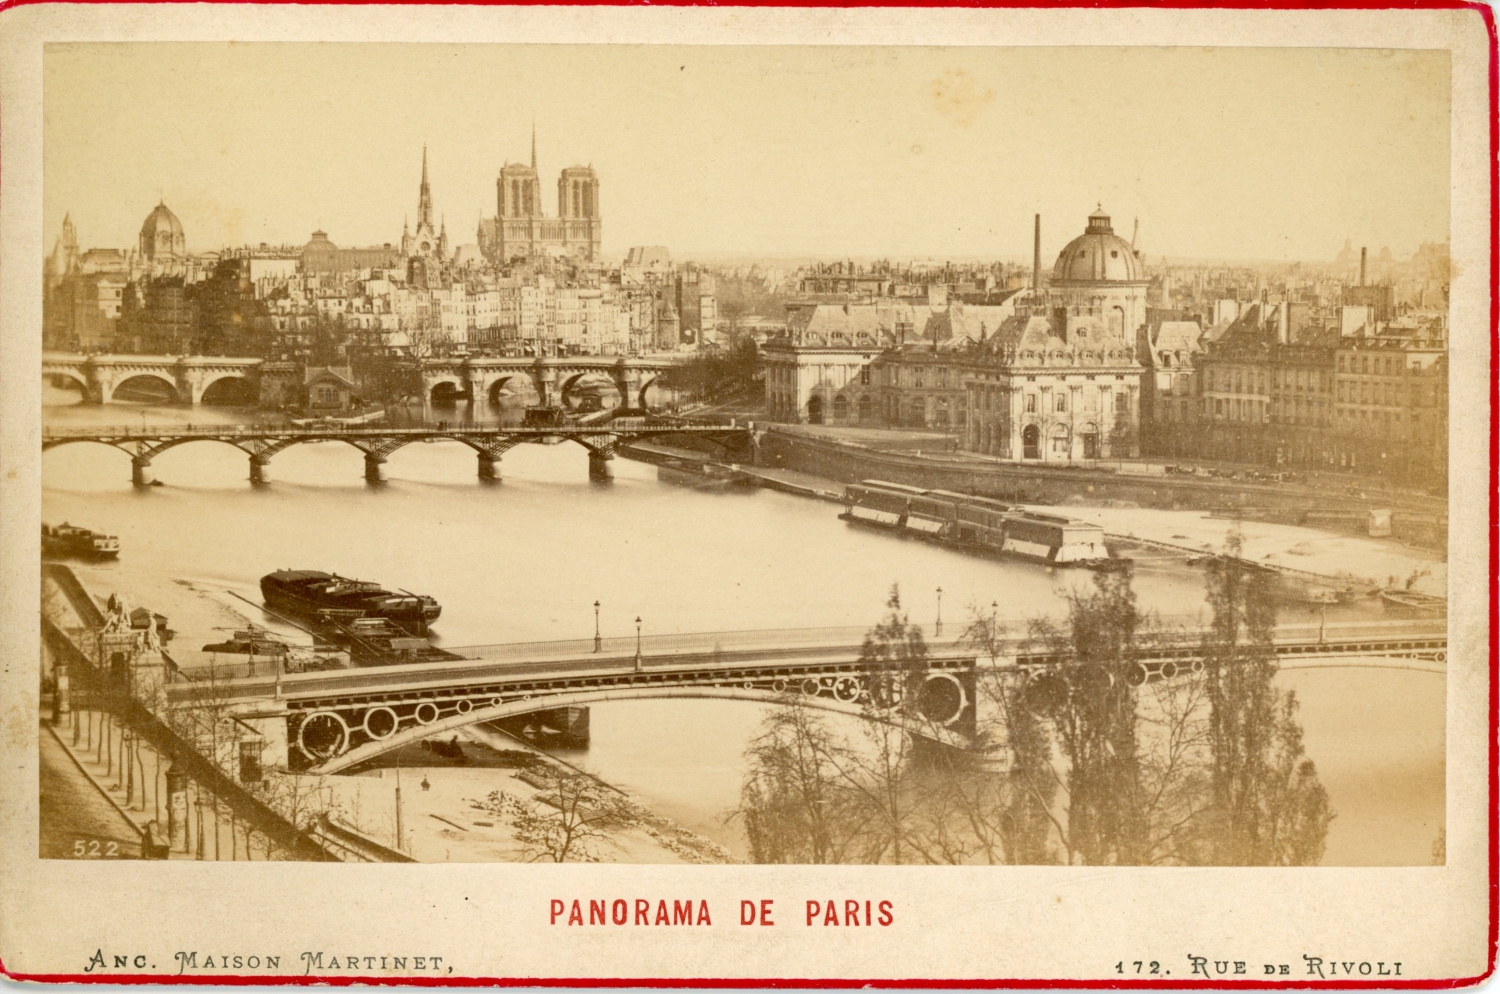 Maison Martinet, France, Panorama de Paris, ca. 1880, vintage albumen ...